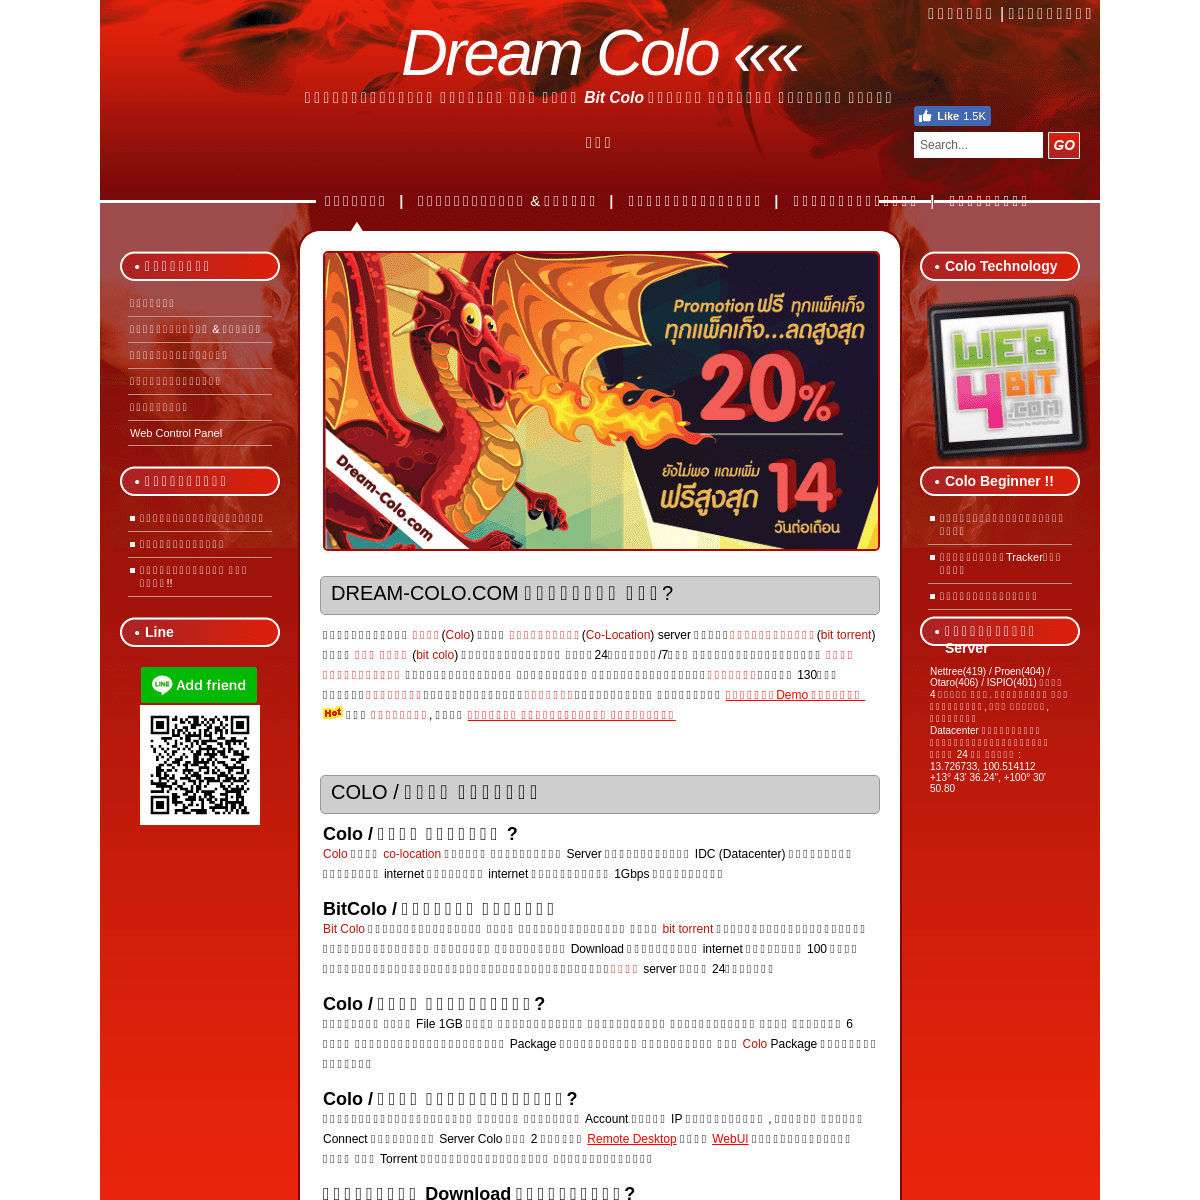 A complete backup of dream-colo.com